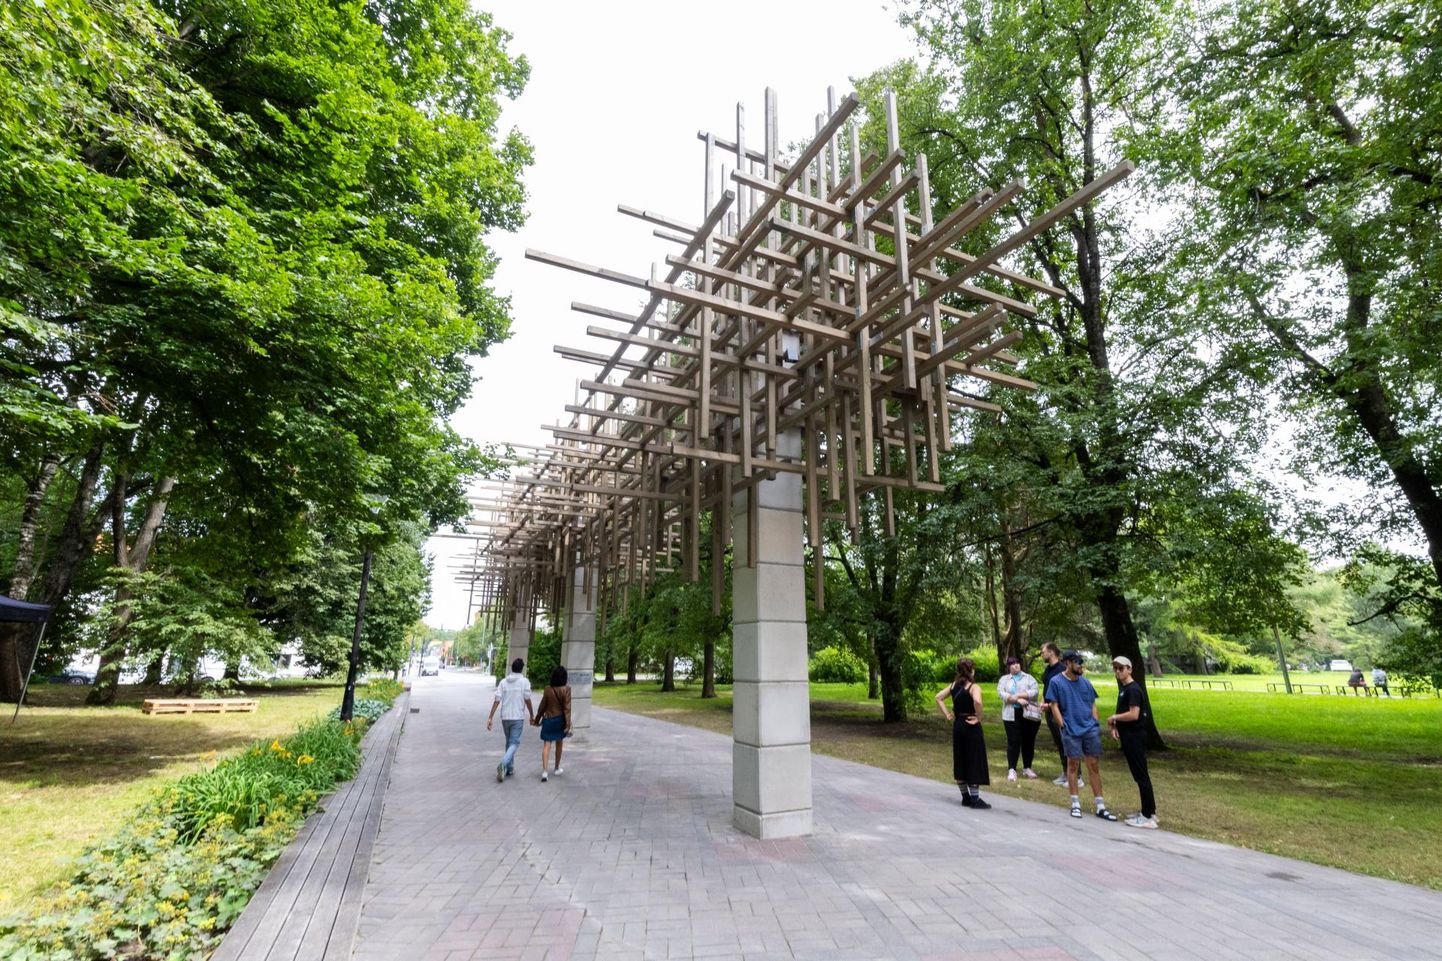 Eesti Kunstiakadeemia arhitektuuri ja linnaplaneerimise eriala tudengid ehitasid Ülejõe pargis varjualuse, mis pakub ka lindudele uusi elupaiku. See on suur samm edasi puu leiutamises.